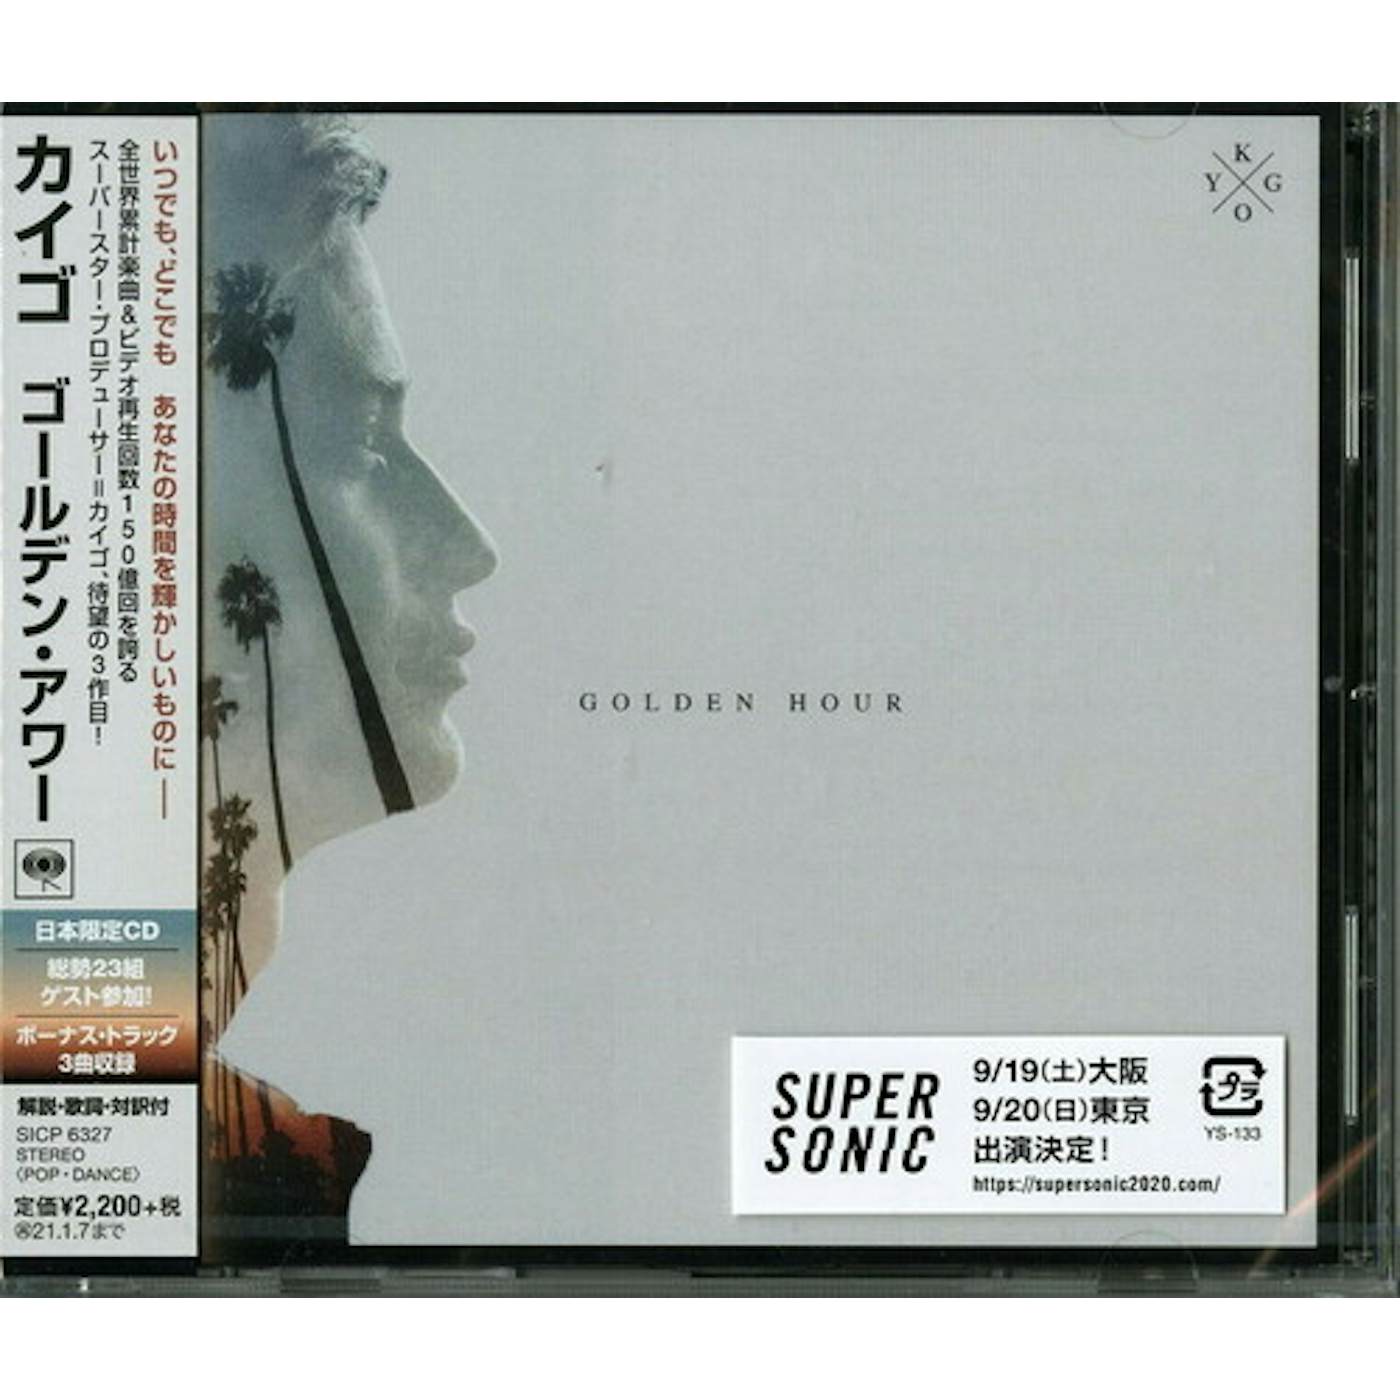 Kygo GOLDEN HOUR CD